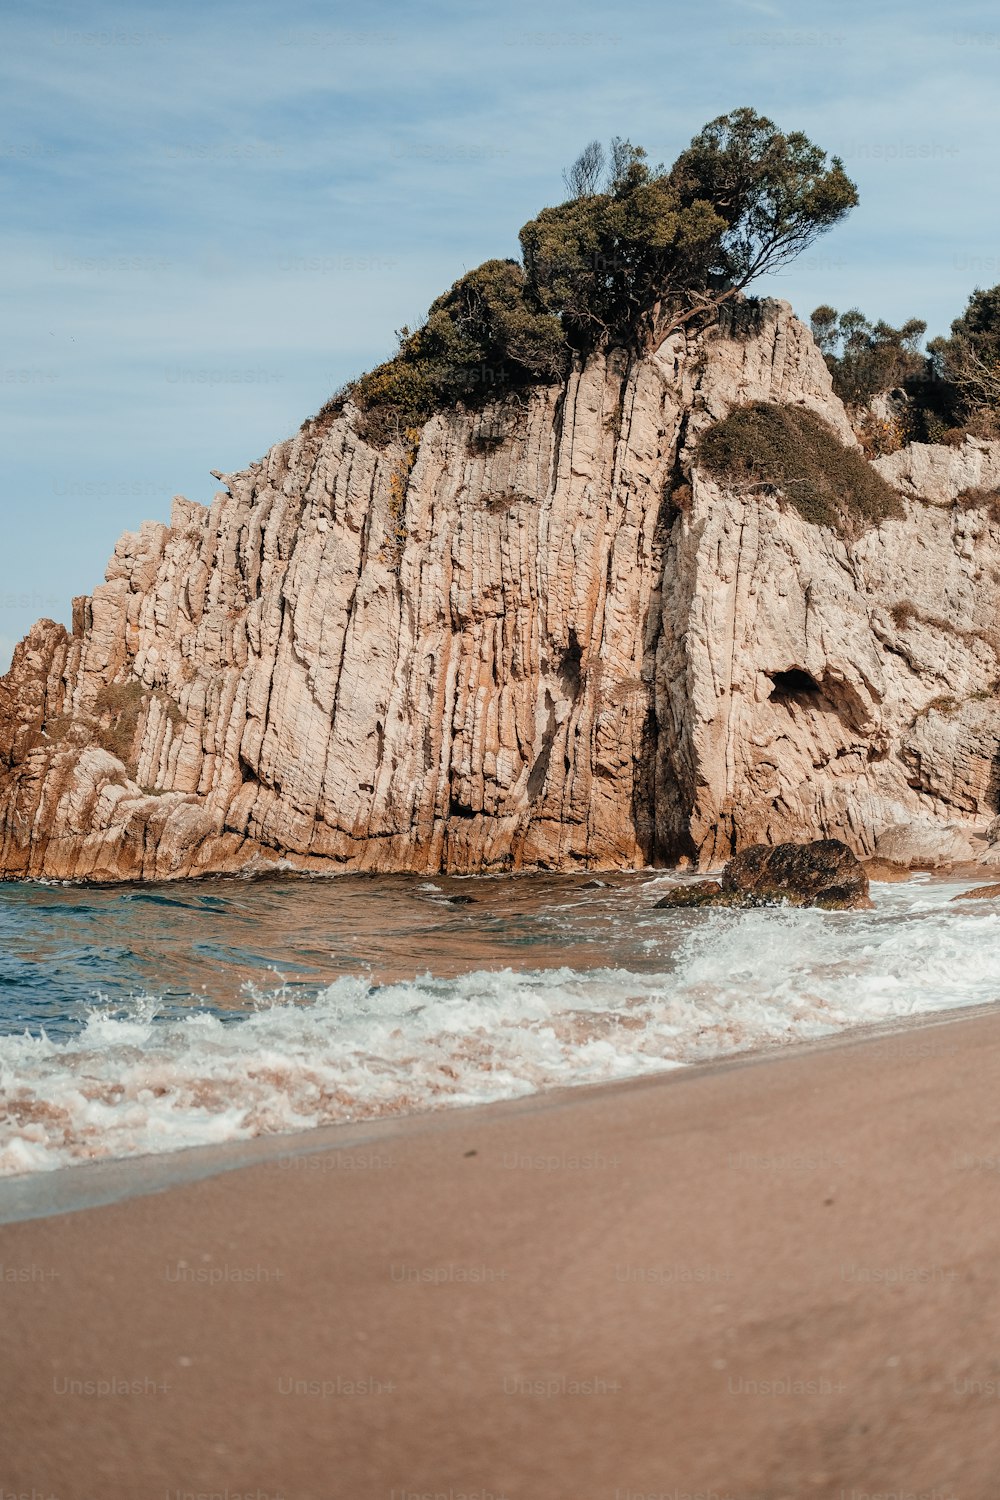 Una grande roccia affiorante su una spiaggia vicino all'oceano